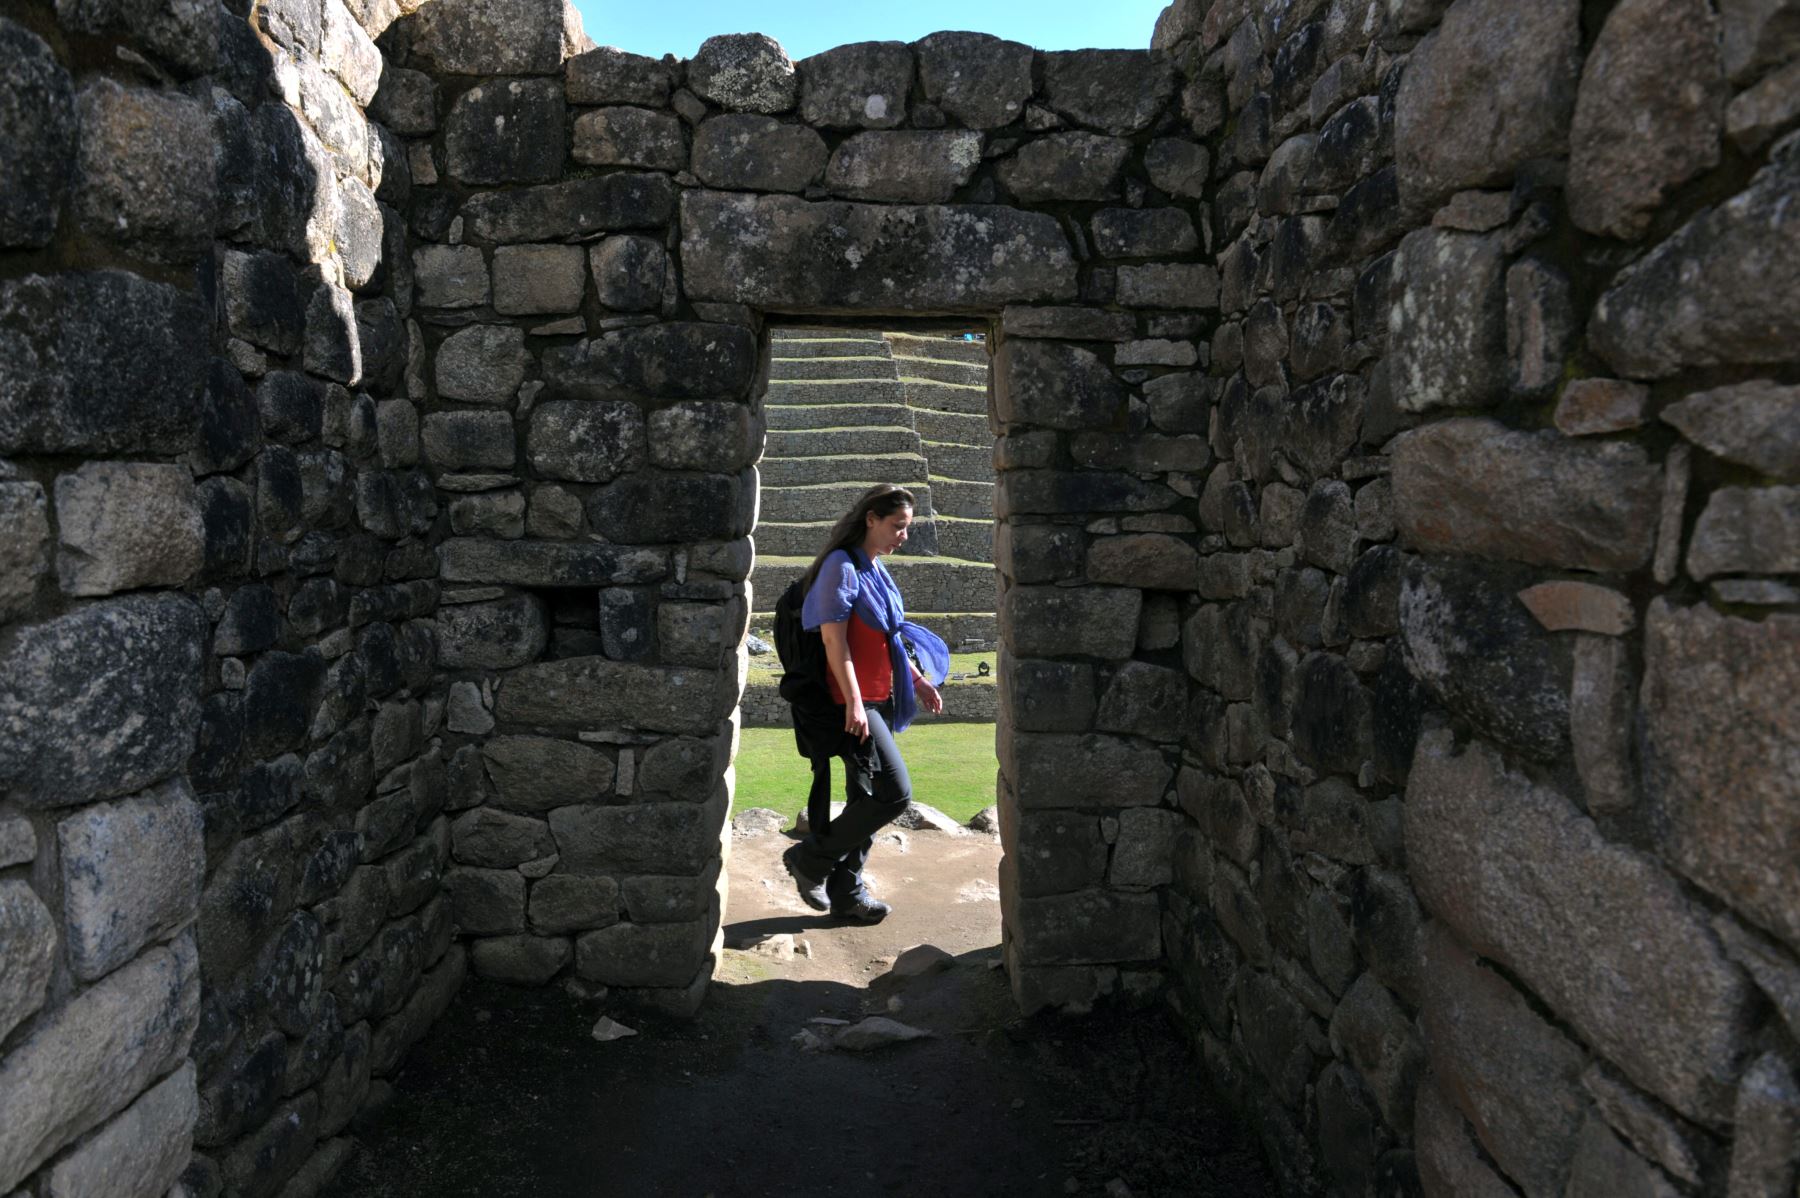 El reciente daño a parte del santuario histórico de Machu Picchu por parte de unos turistas extranjeros nos recuerda que la legislación penal peruana tipifica este acto como delito contra el patrimonio cultural y establece sanciones que pueden conllevar a una prisión efectiva y el pago de una multa considerable.